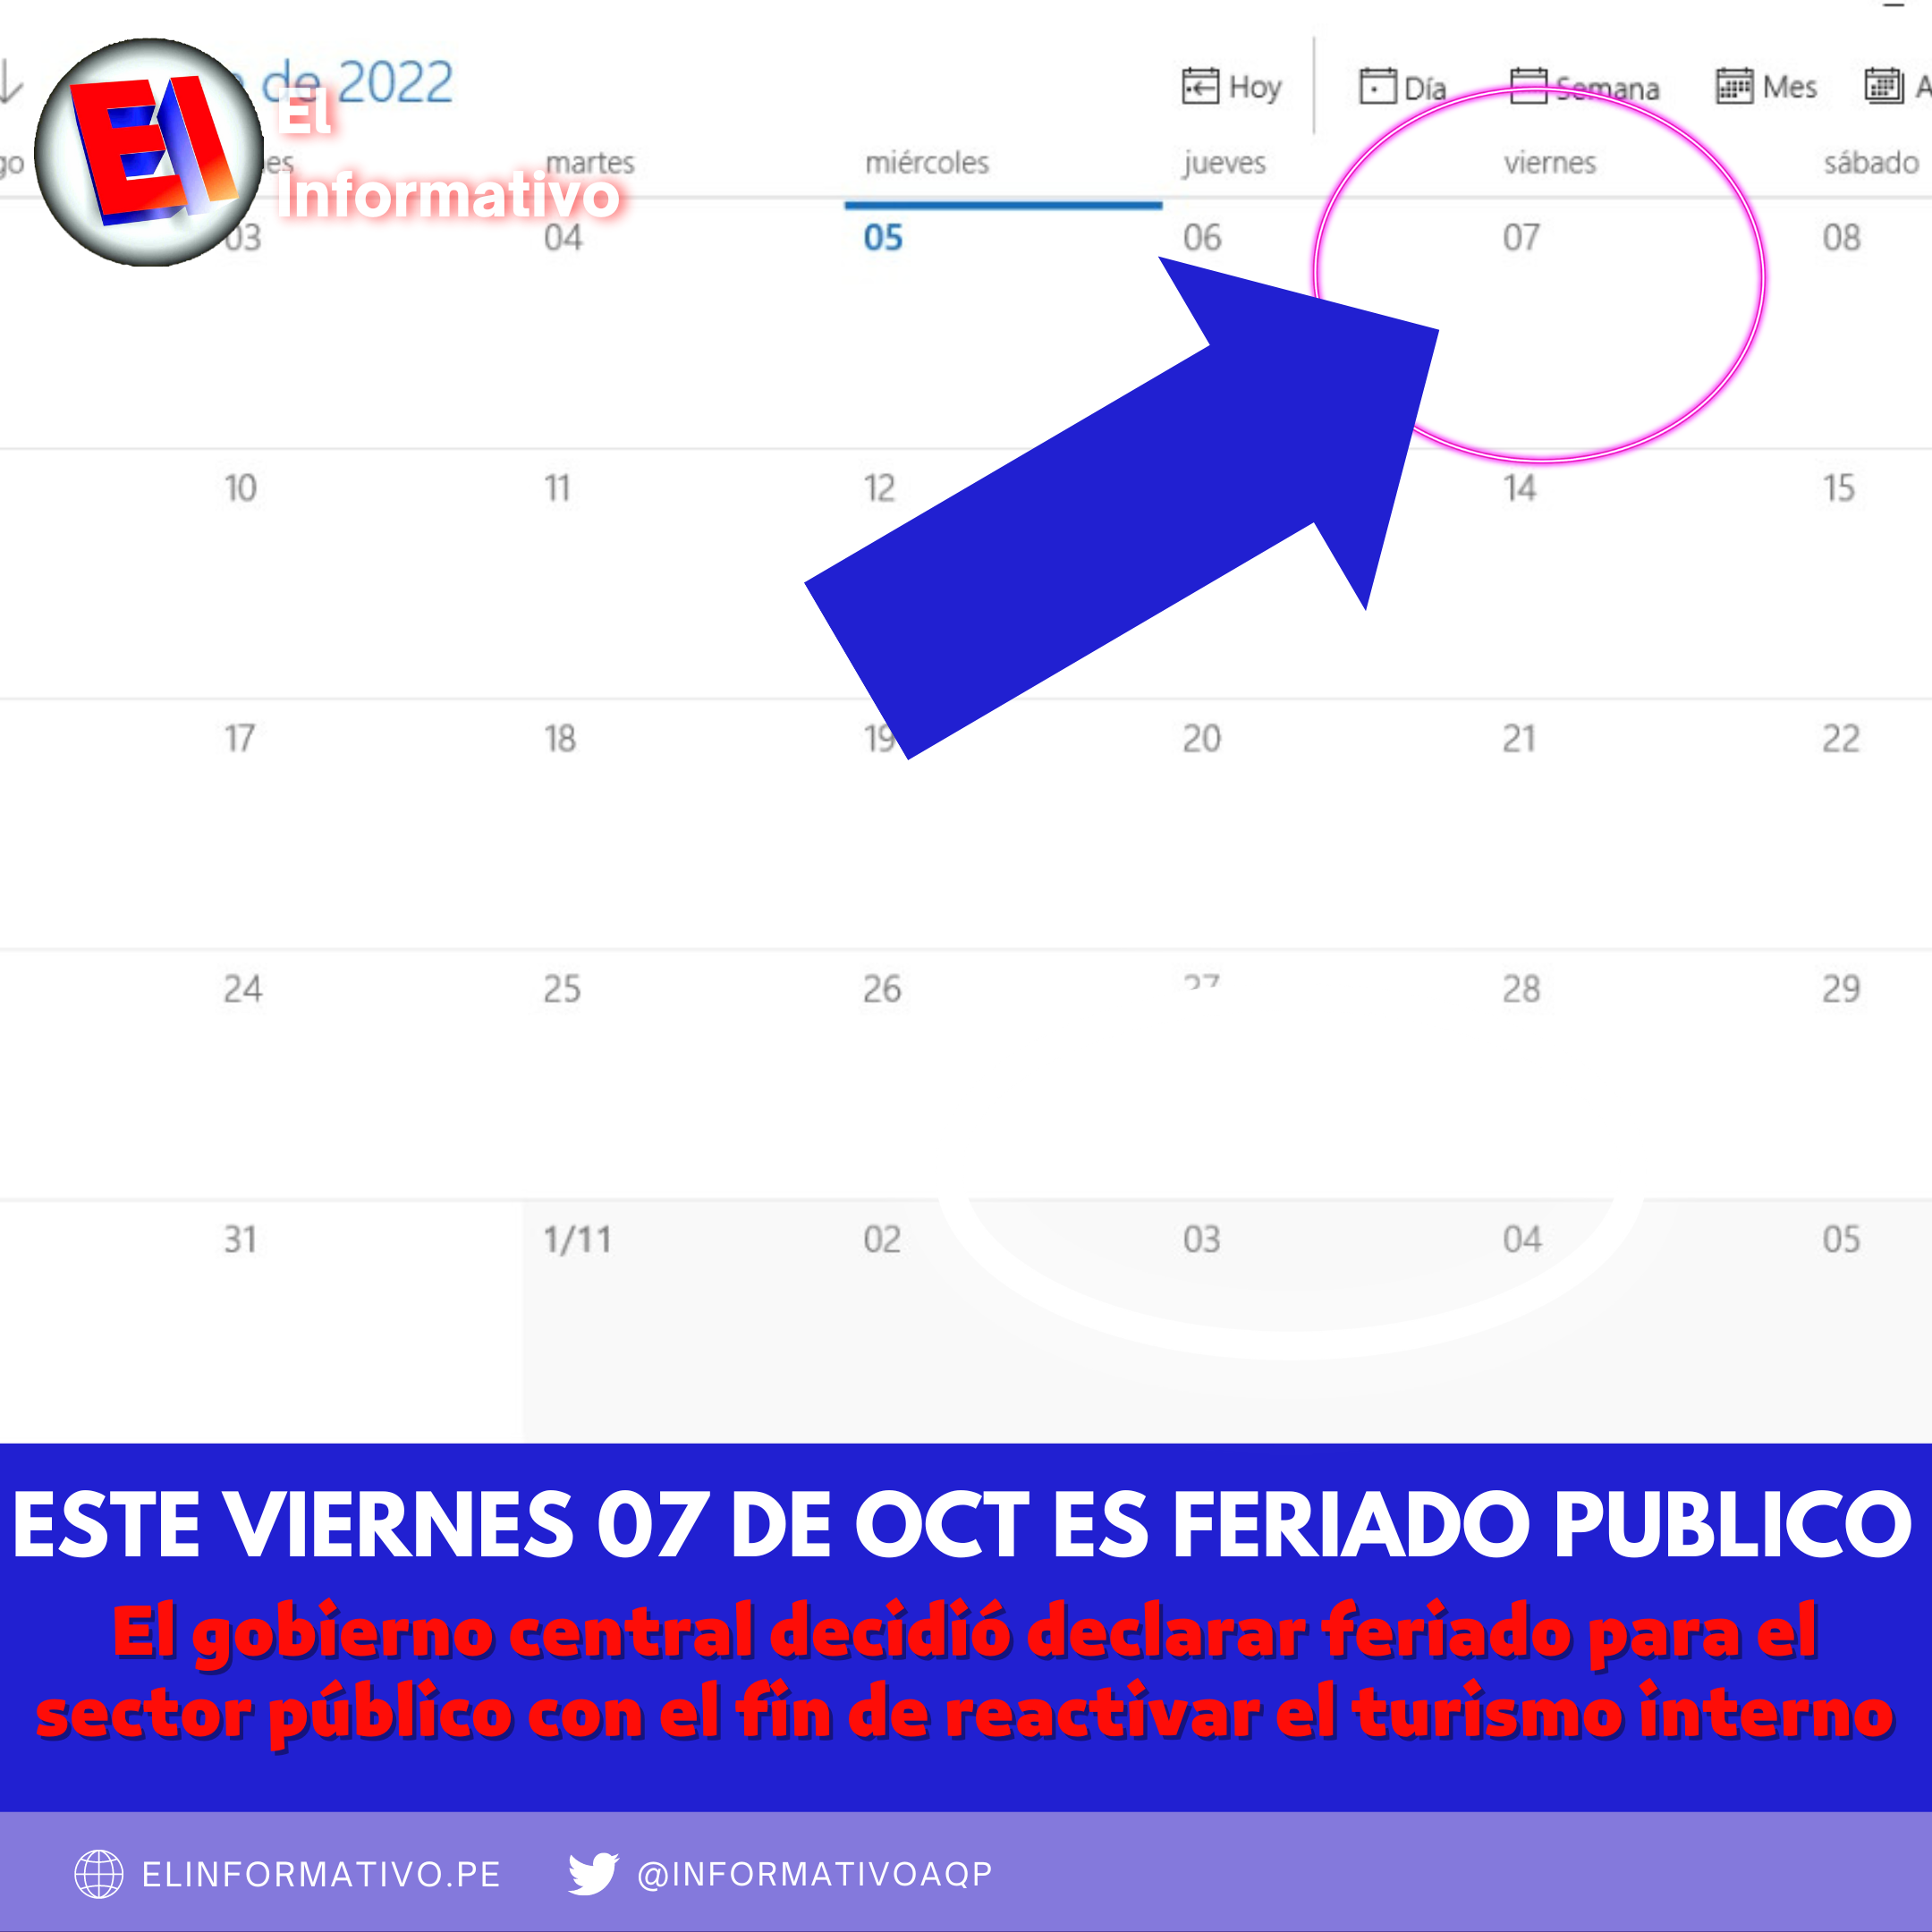 Declaran feriado para el sector público el viernes 07 de octubre